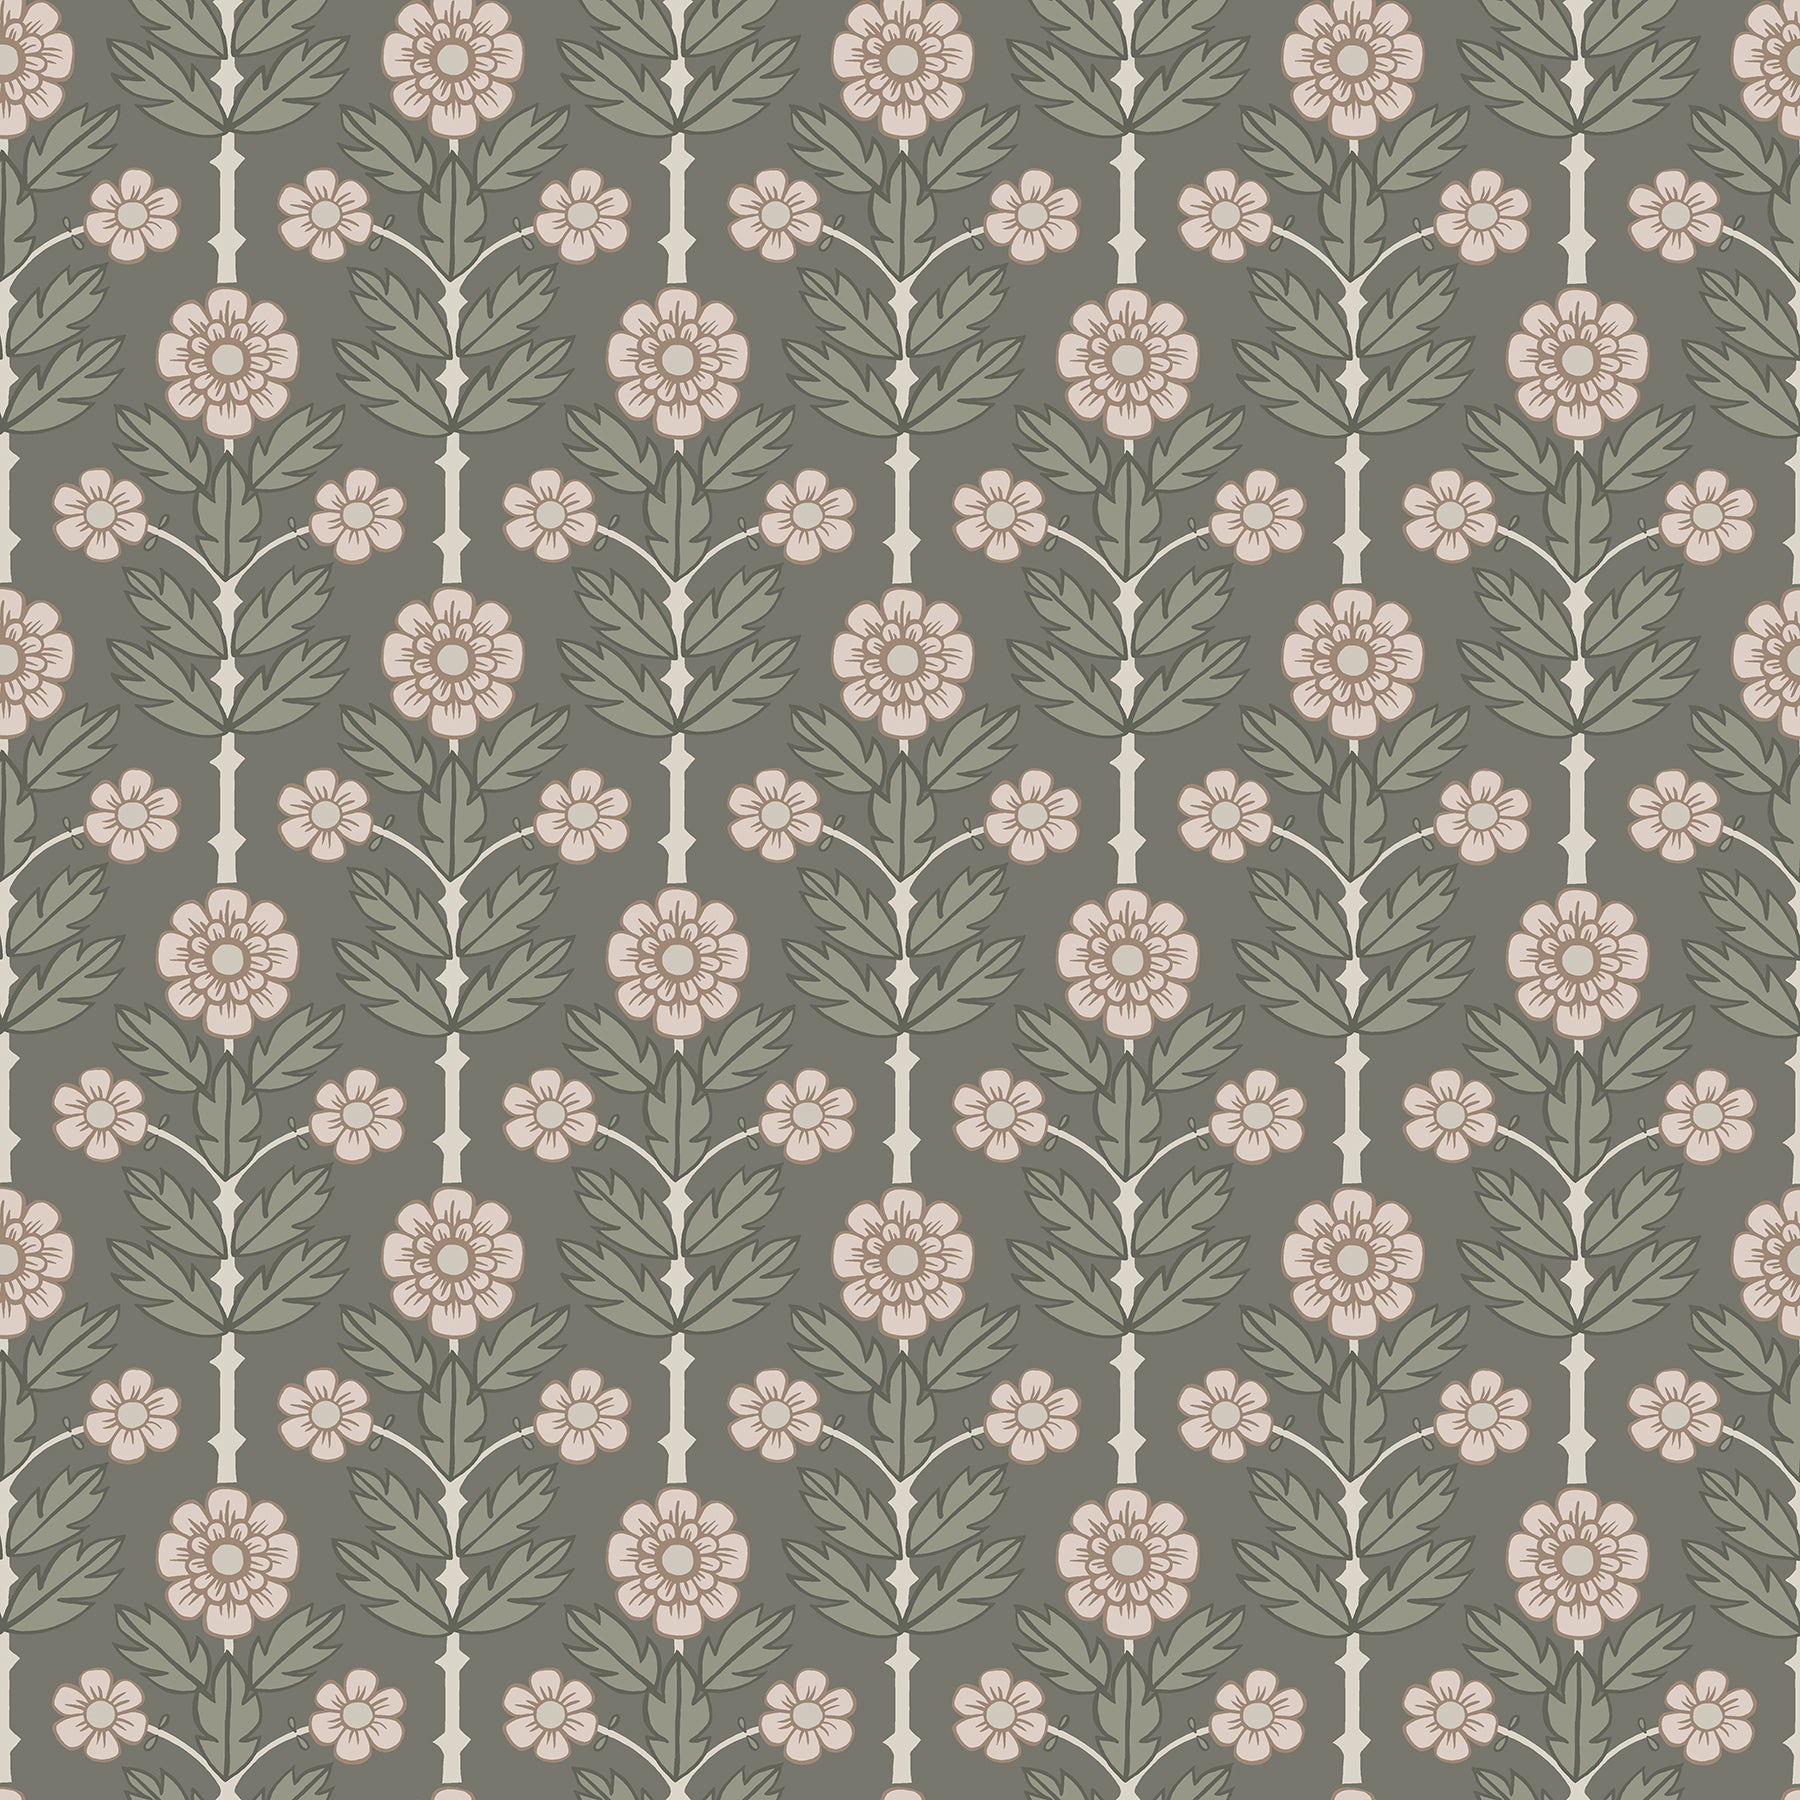 A-Street Prints 2948-33001 Anemone Grey Floral Wallpaper